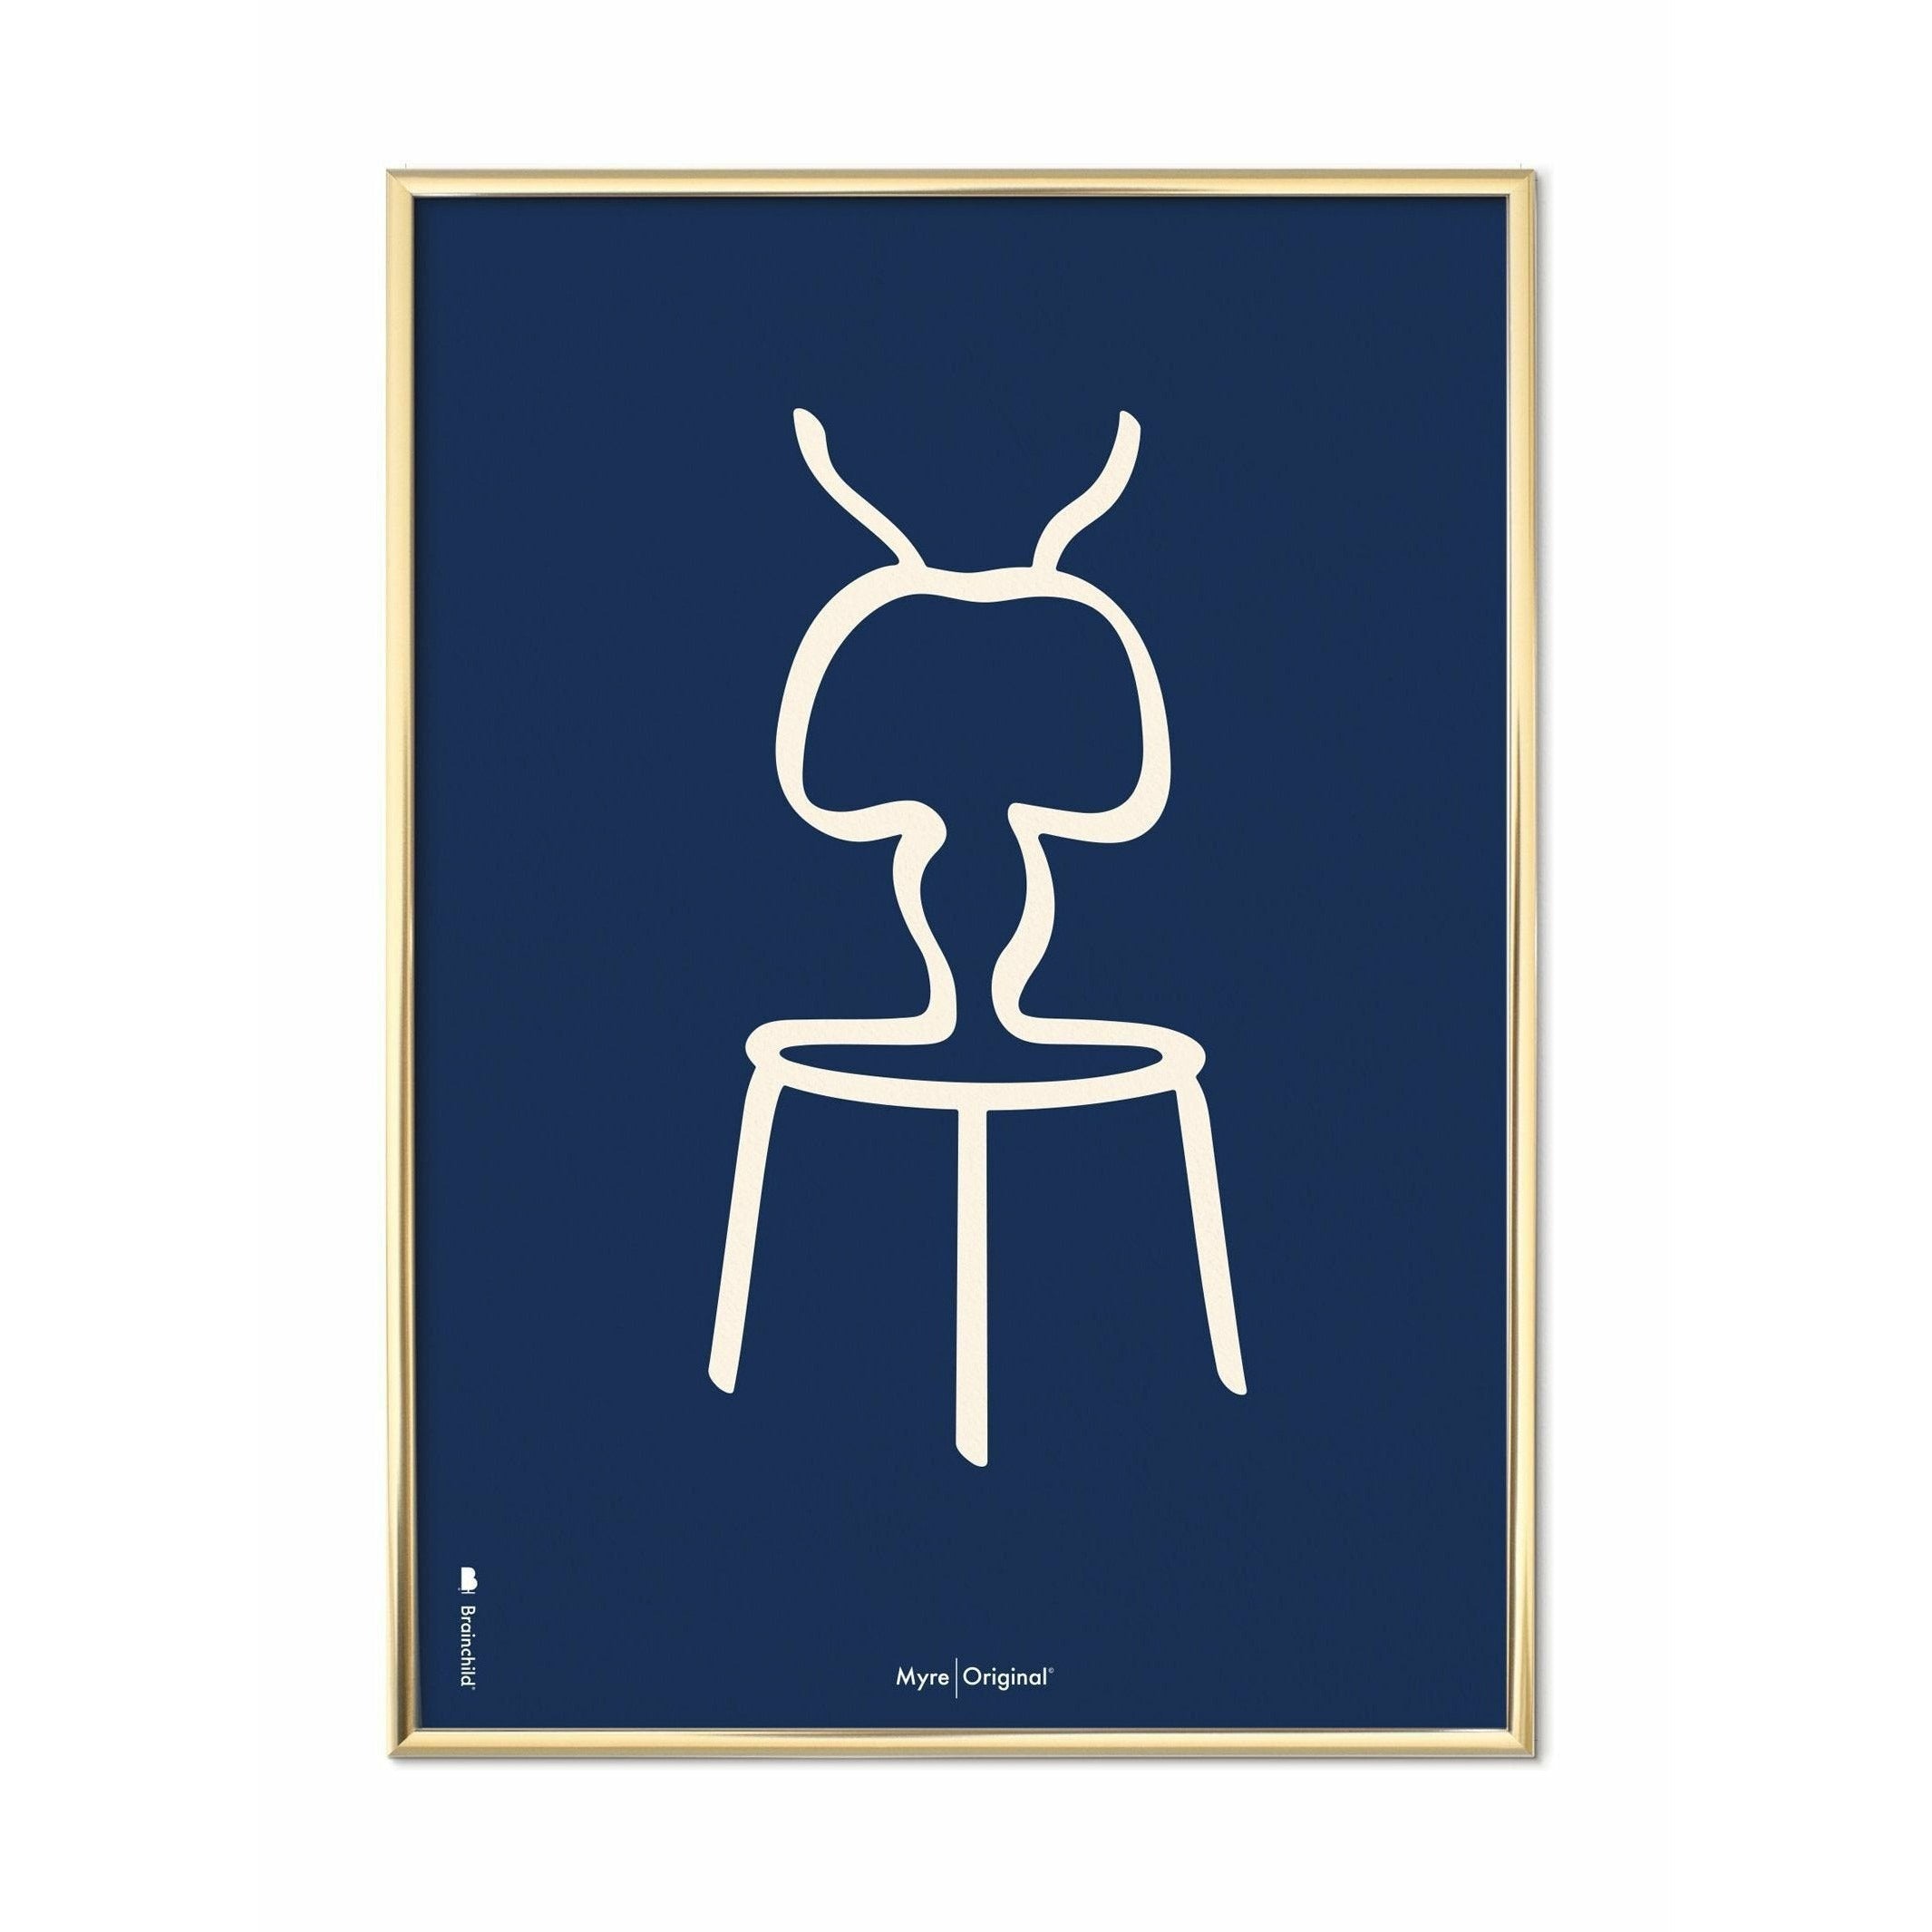 Plakát Ant Line Brainchild, mosazný barevný rám 50x70 cm, modré pozadí